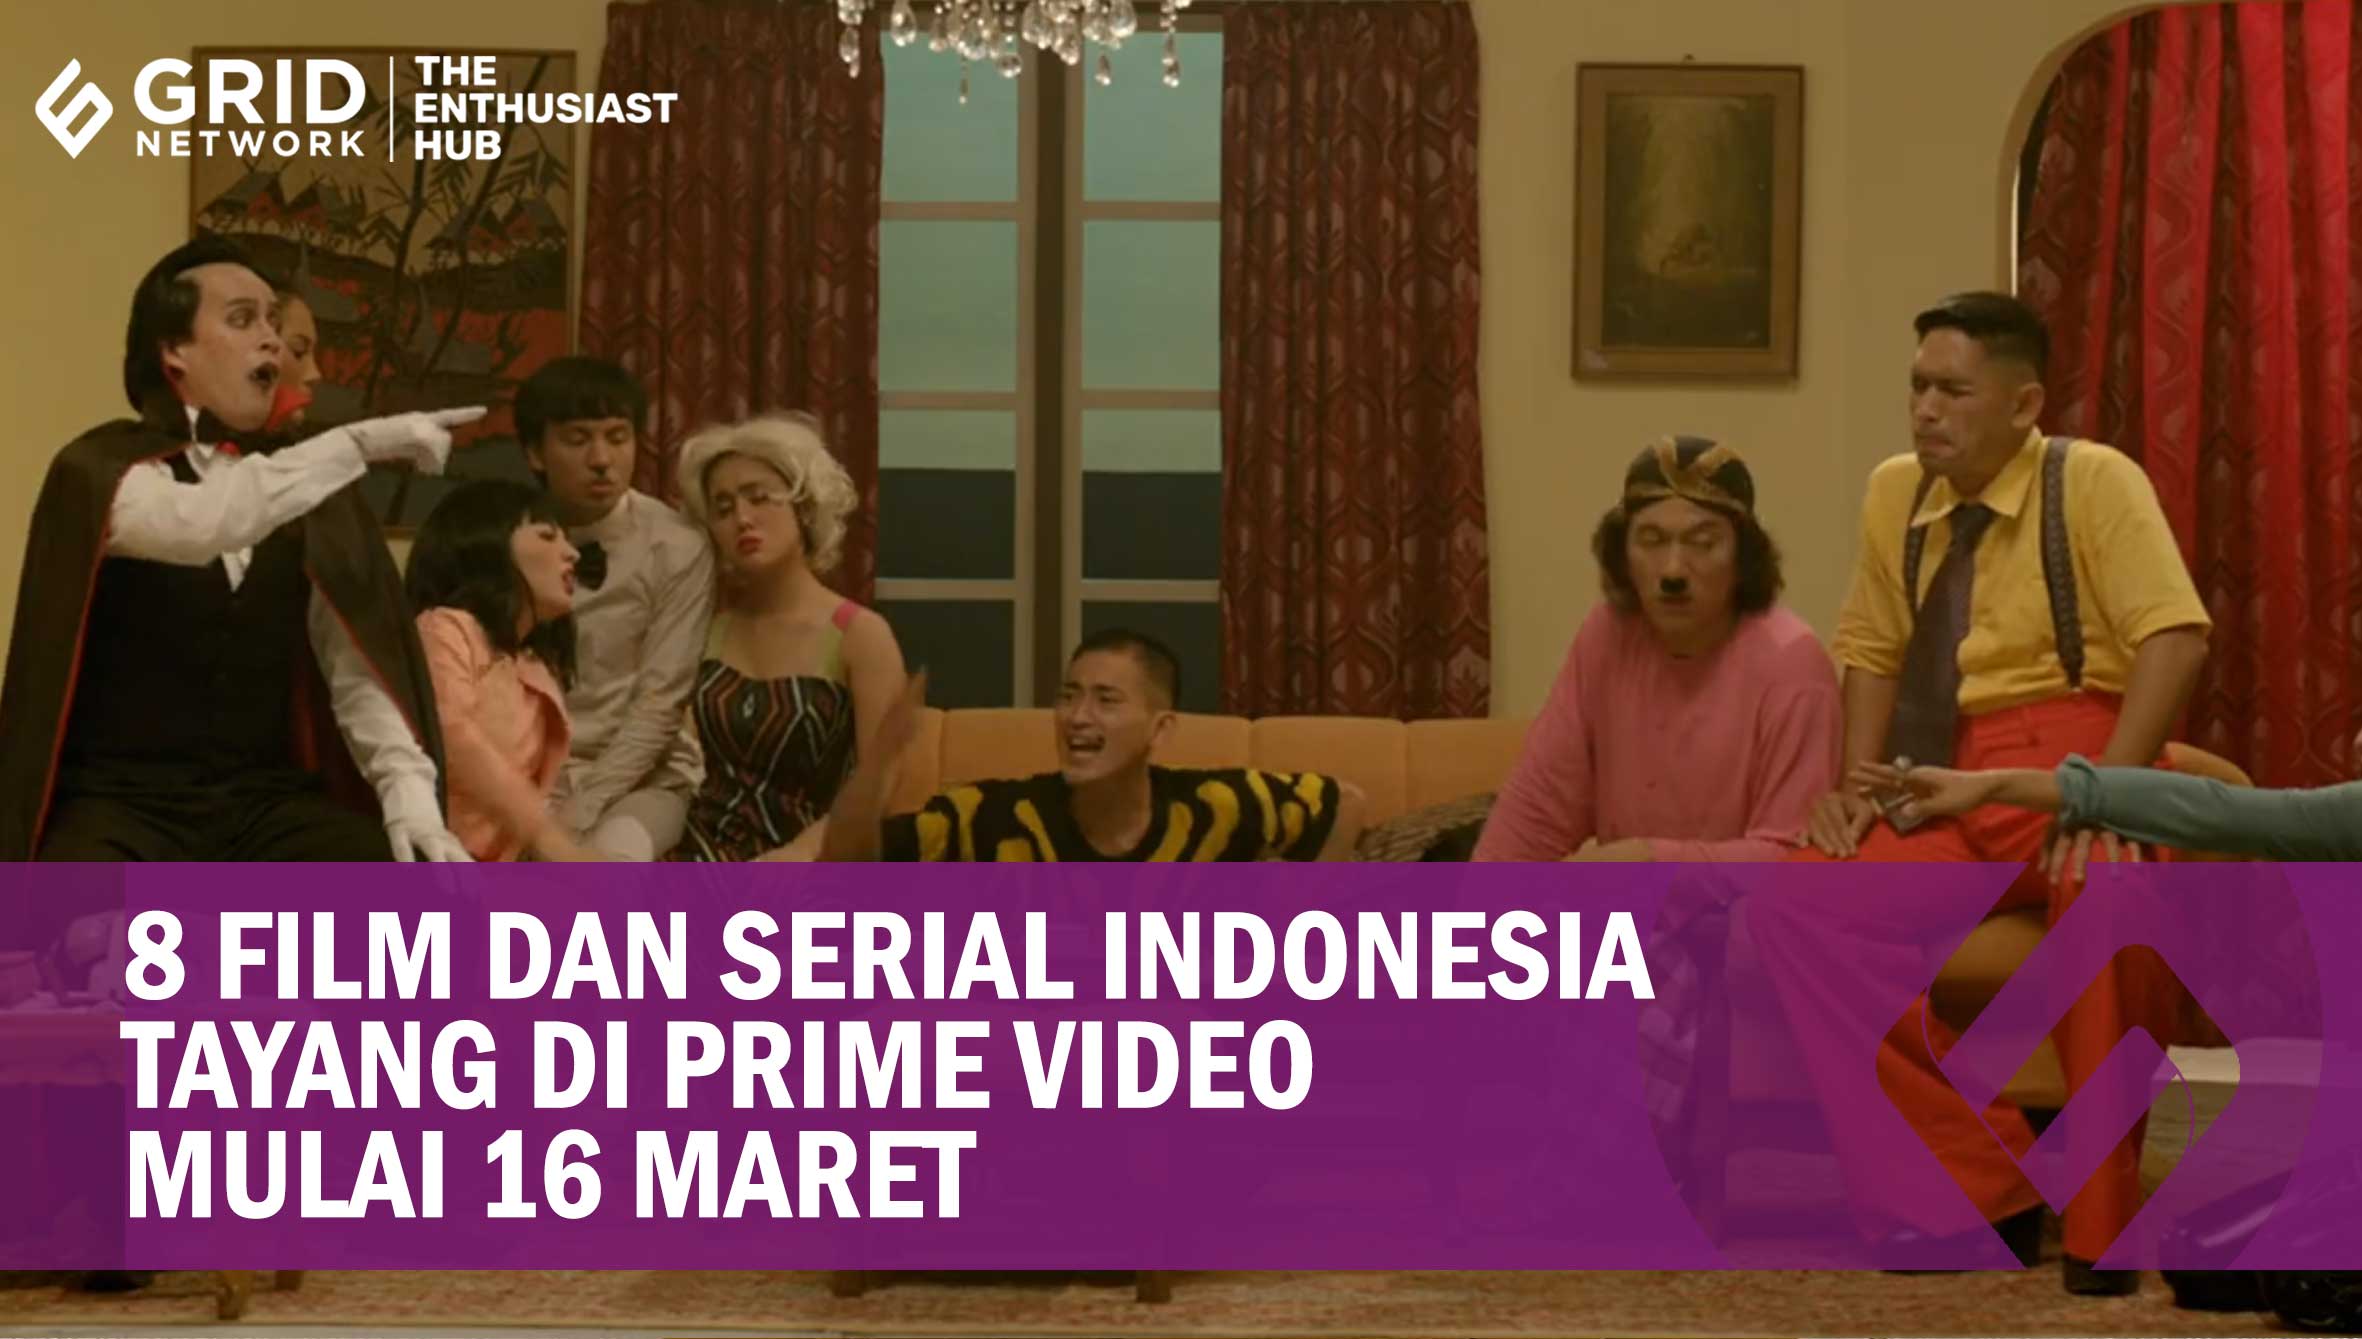 8 Film dan Serial Indonesia Tayang di Prime Video Mulai 16 Maret,